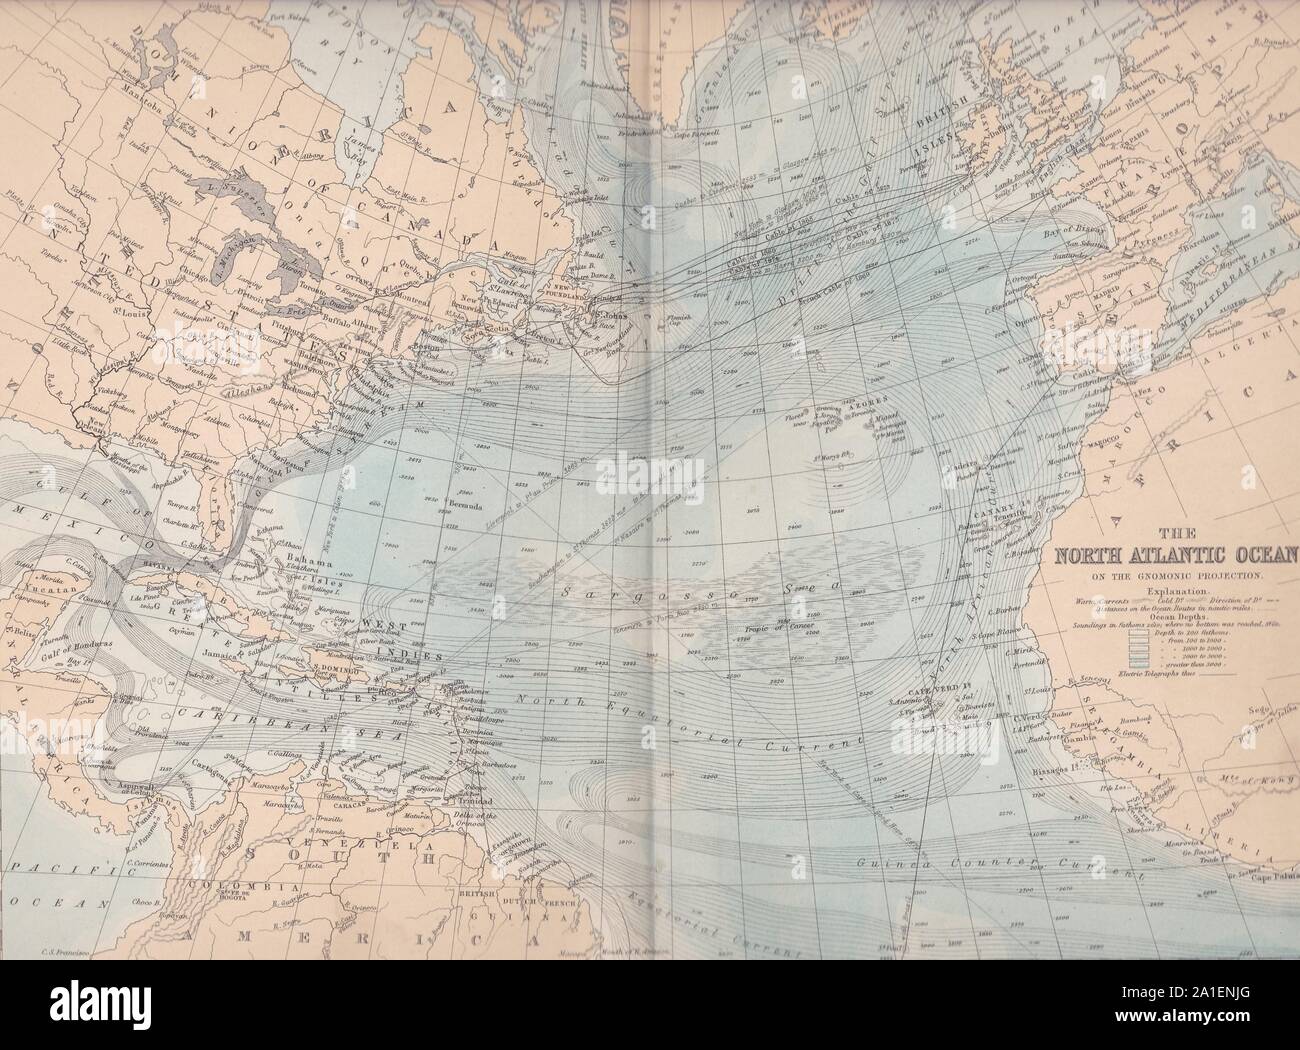 Buchen Sie die Platte auf den Nordatlantik auf der Gnomonic Projektion - antike Karte 1800. Stockfoto